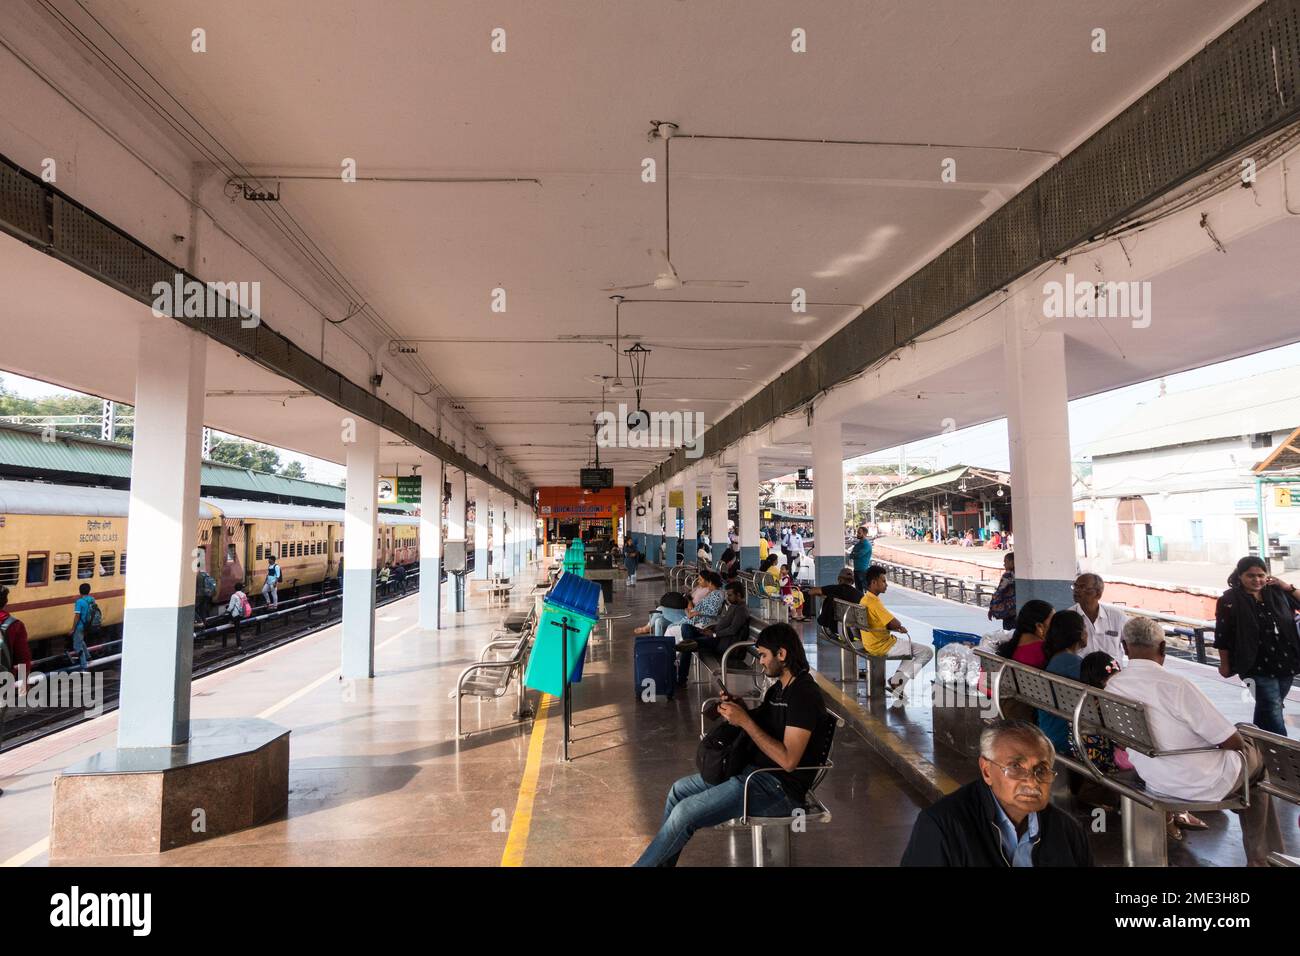 Stazione ferroviaria indiana con posti a sedere e area coperta per l'attesa sul binario Foto Stock